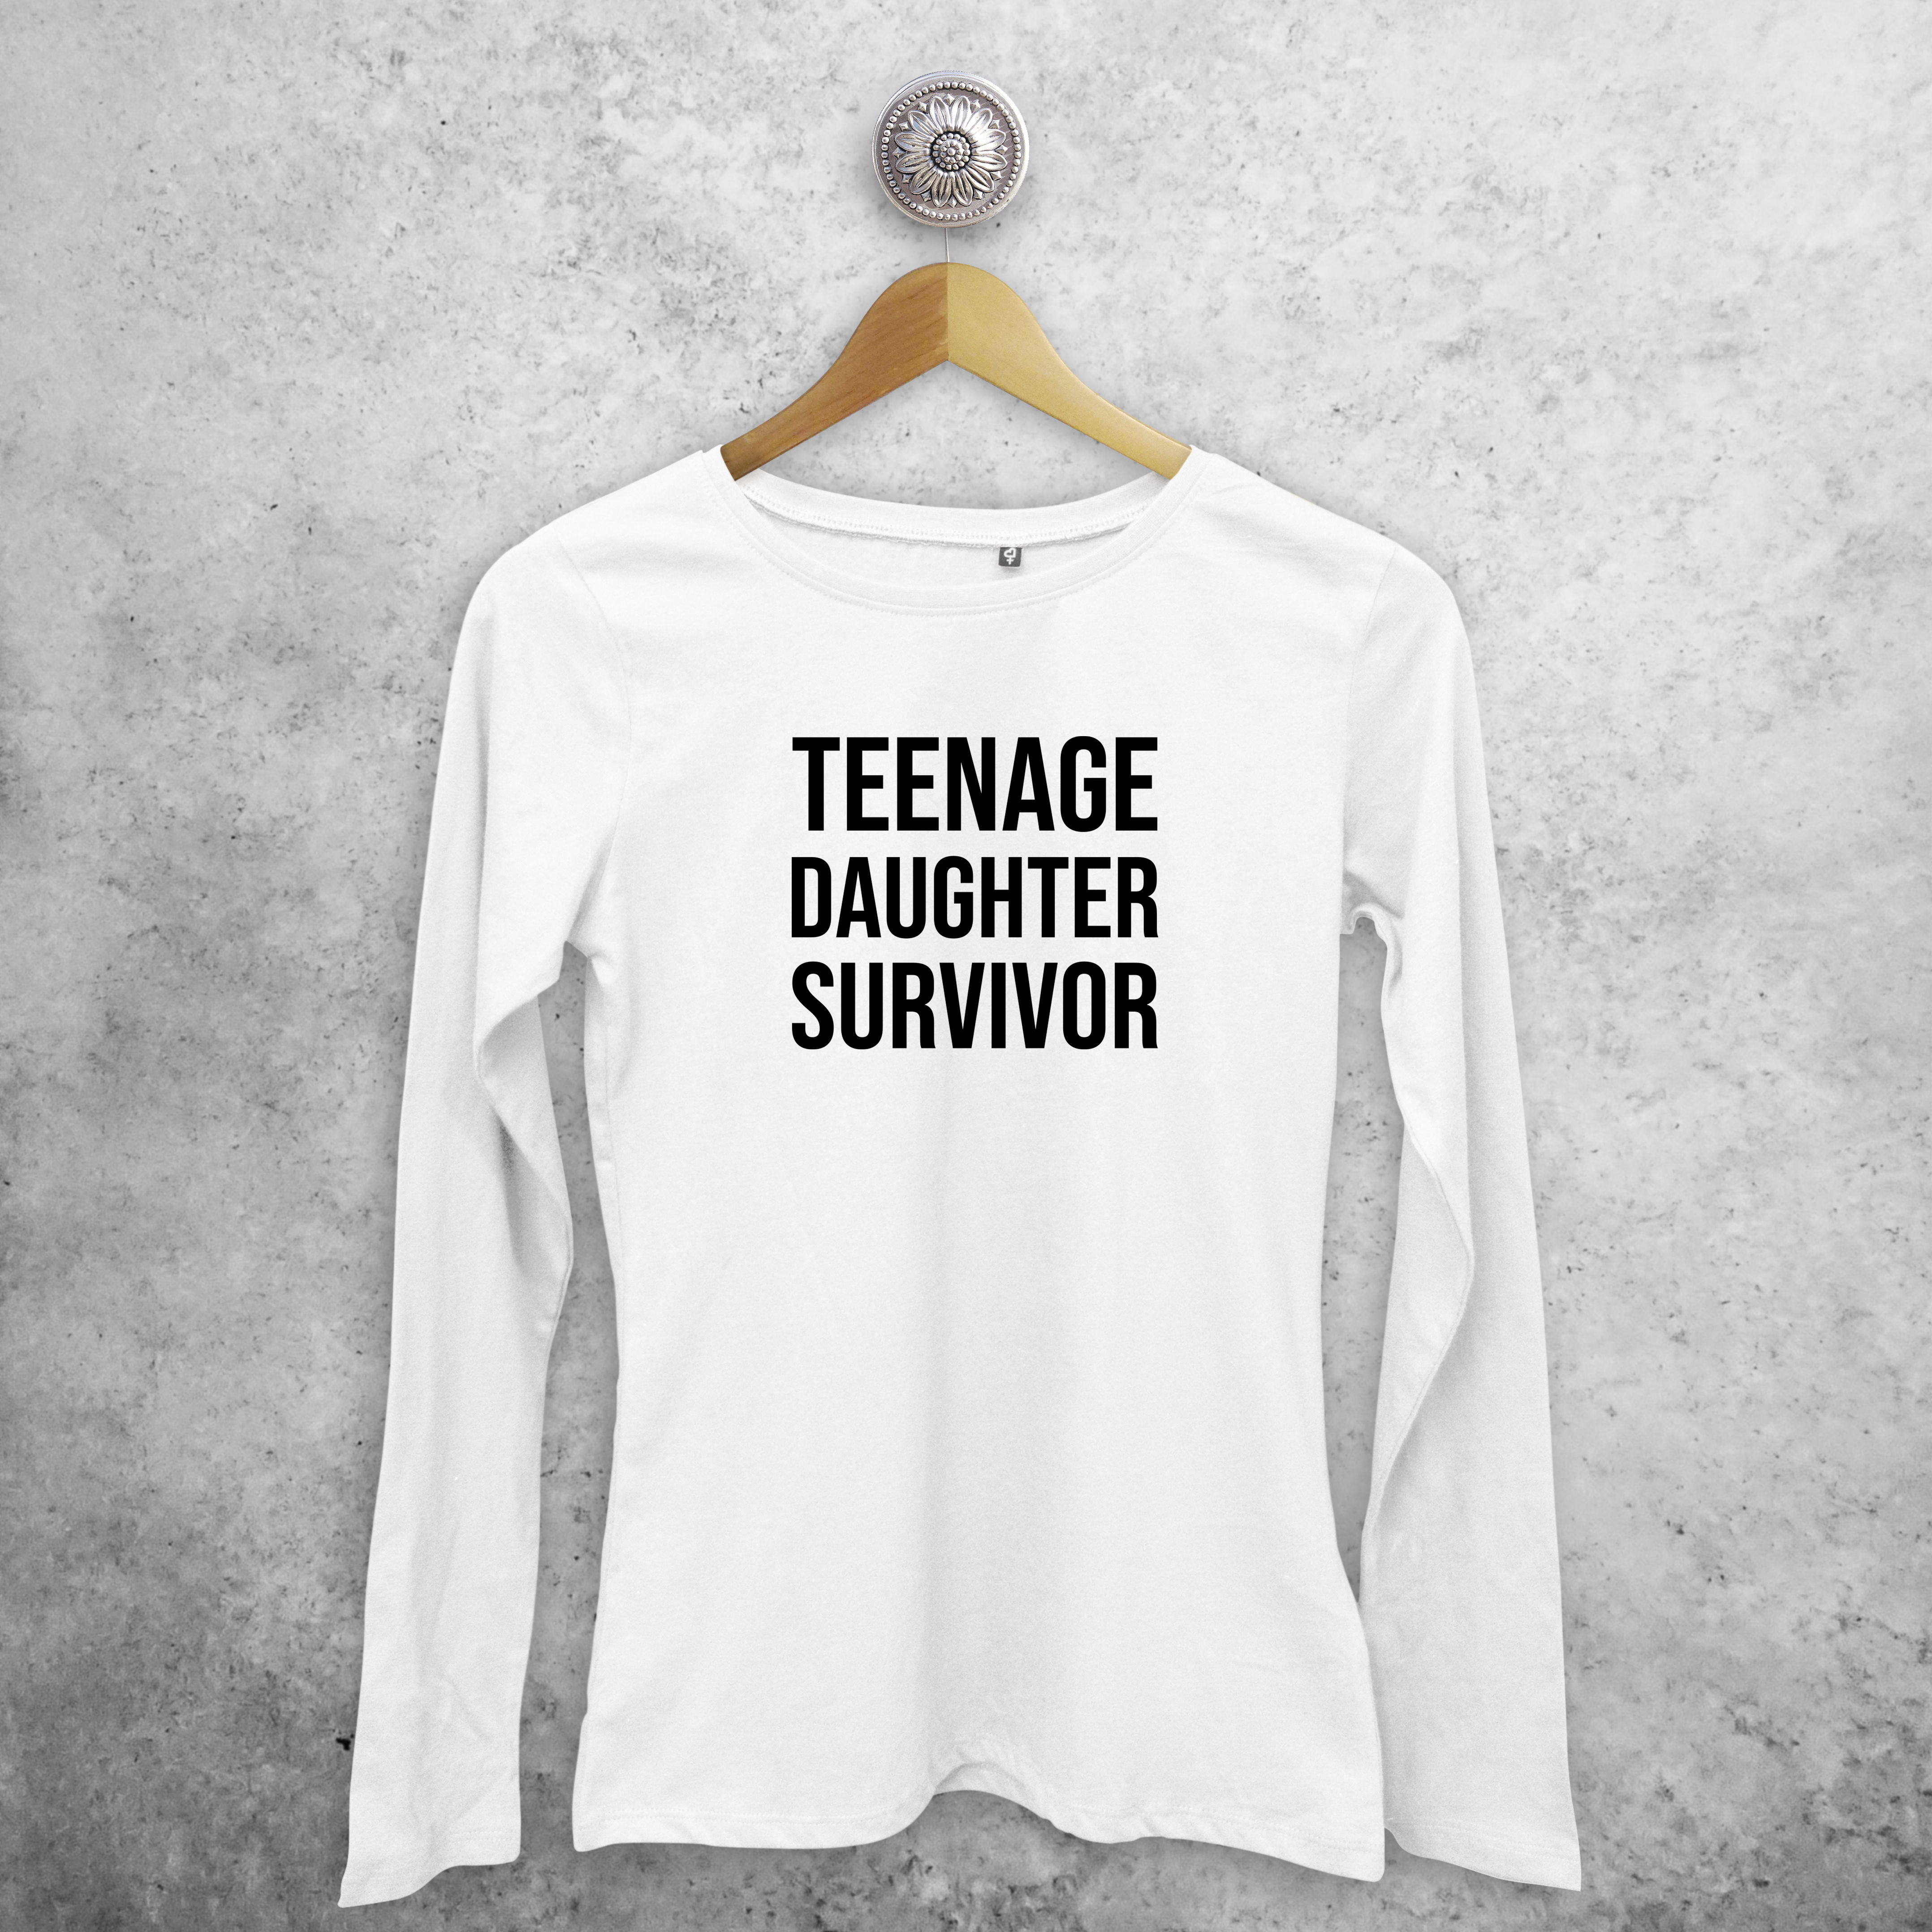 'Teenage daughter survivor' volwassene shirt met lange mouwen